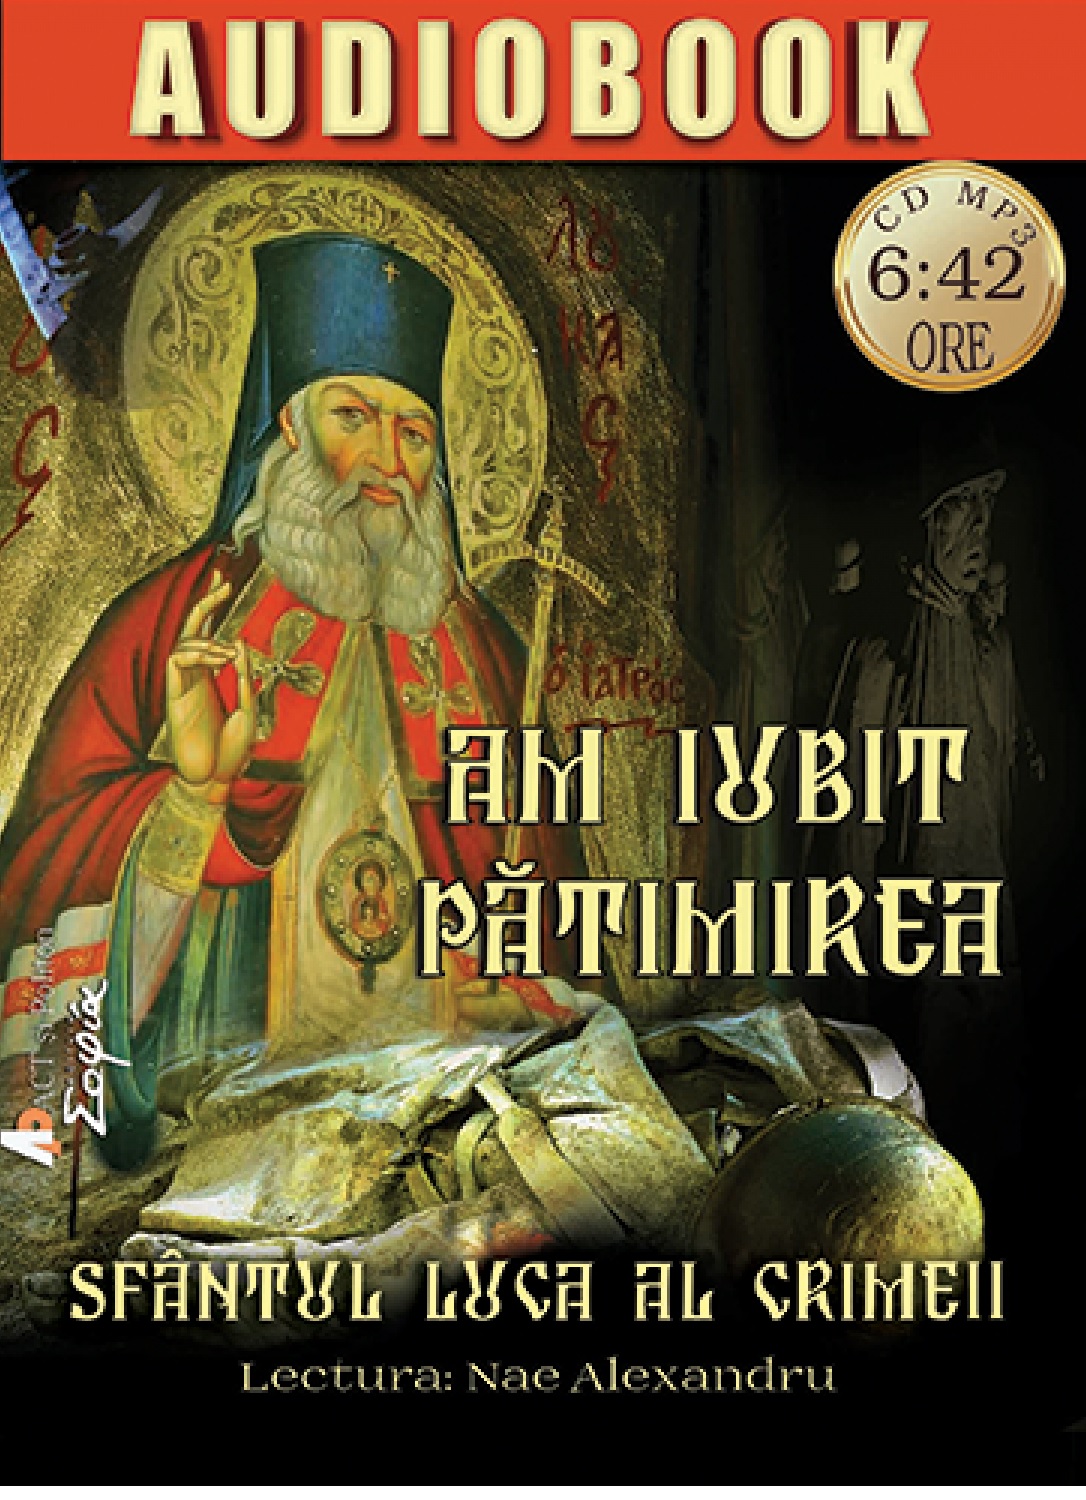 Am iubit patimirea | Sfantul Luca al Crimeii carturesti.ro Audiobook